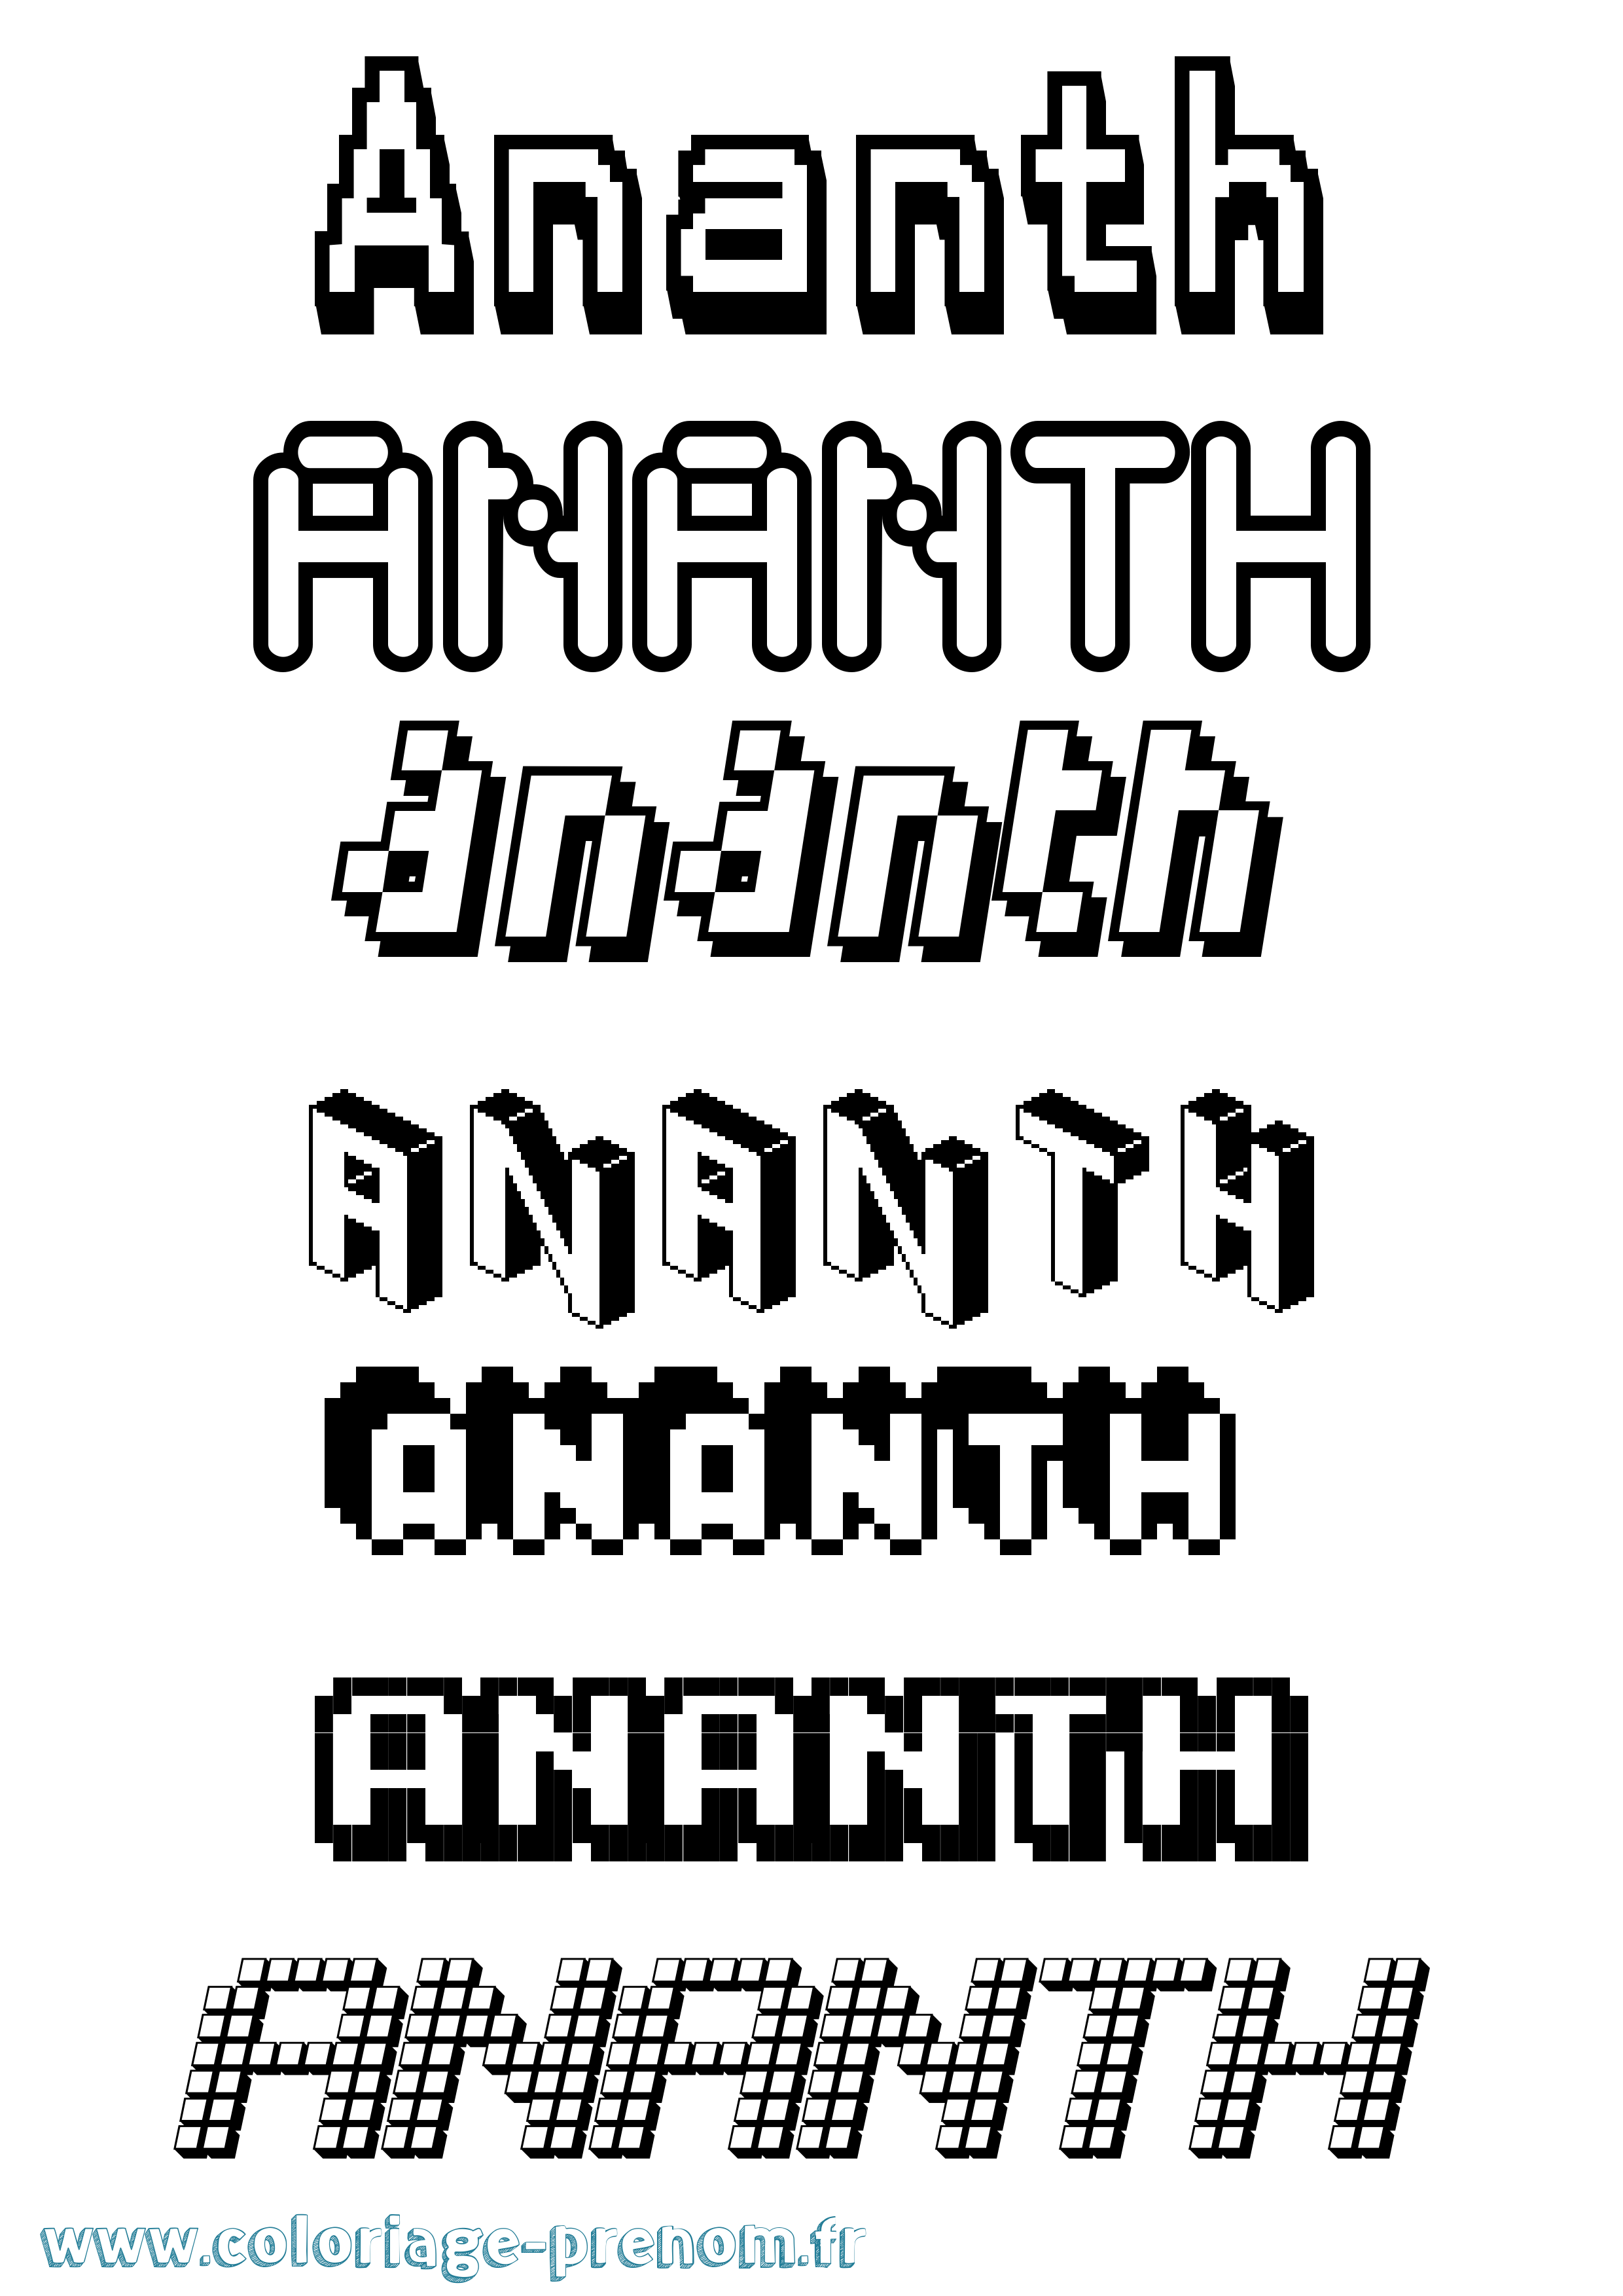 Coloriage prénom Ananth Pixel